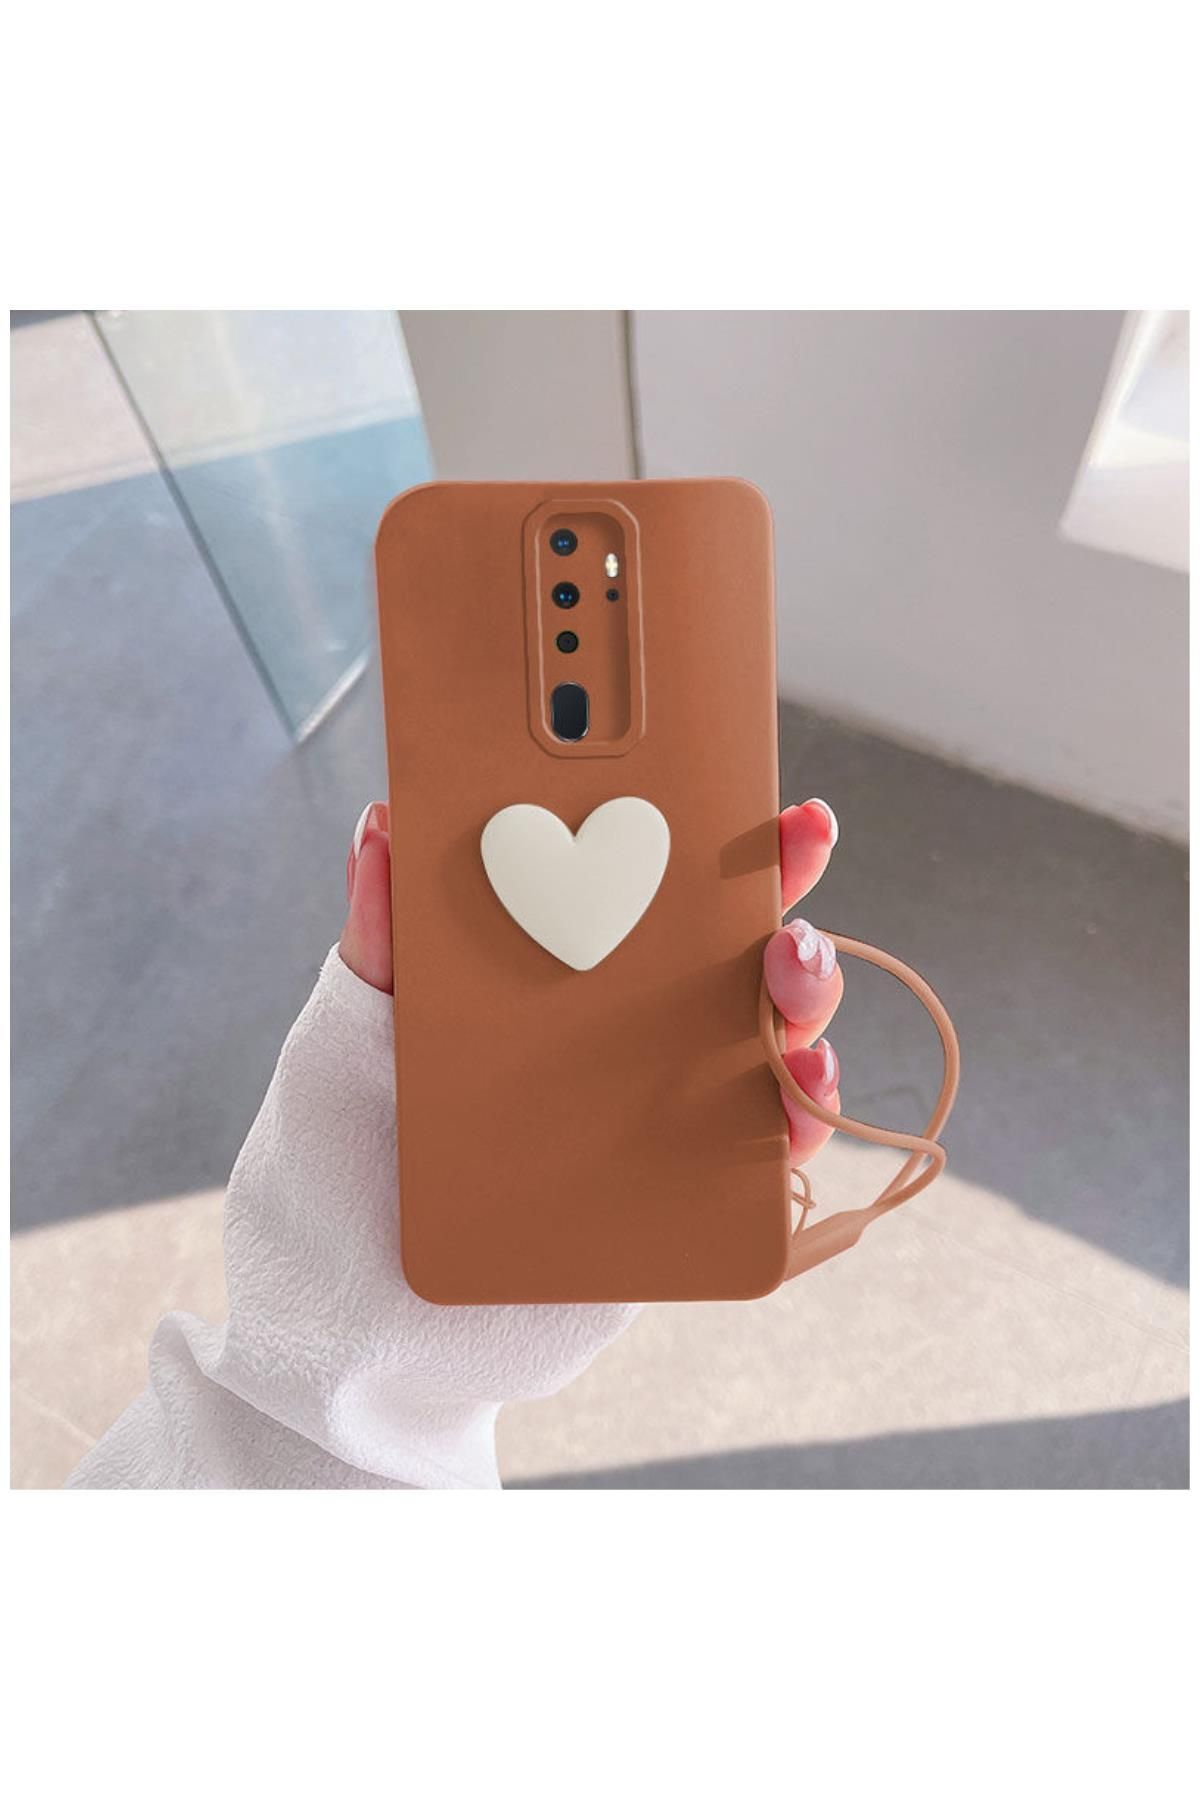 Zebana Oppo A9 2020 Uyumlu Kılıf Kalpli Love Silikon Kılıf Kahverengi